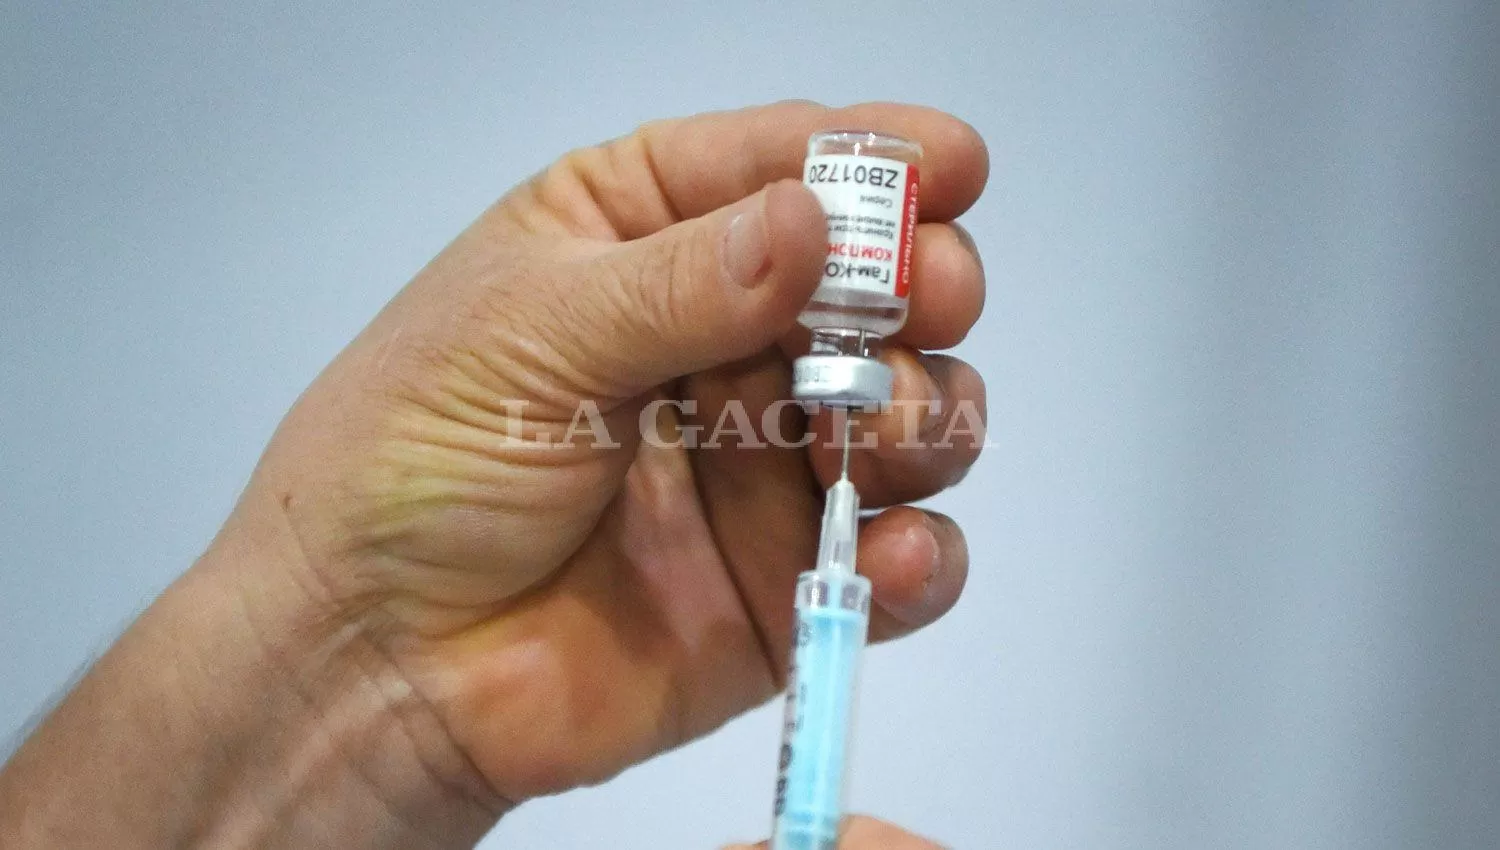 La campaña de vacunación contra la covid comenzó en diciembre. ARCHIVO LA GACETA / FOTO DE ANALÍA JARAMILLO